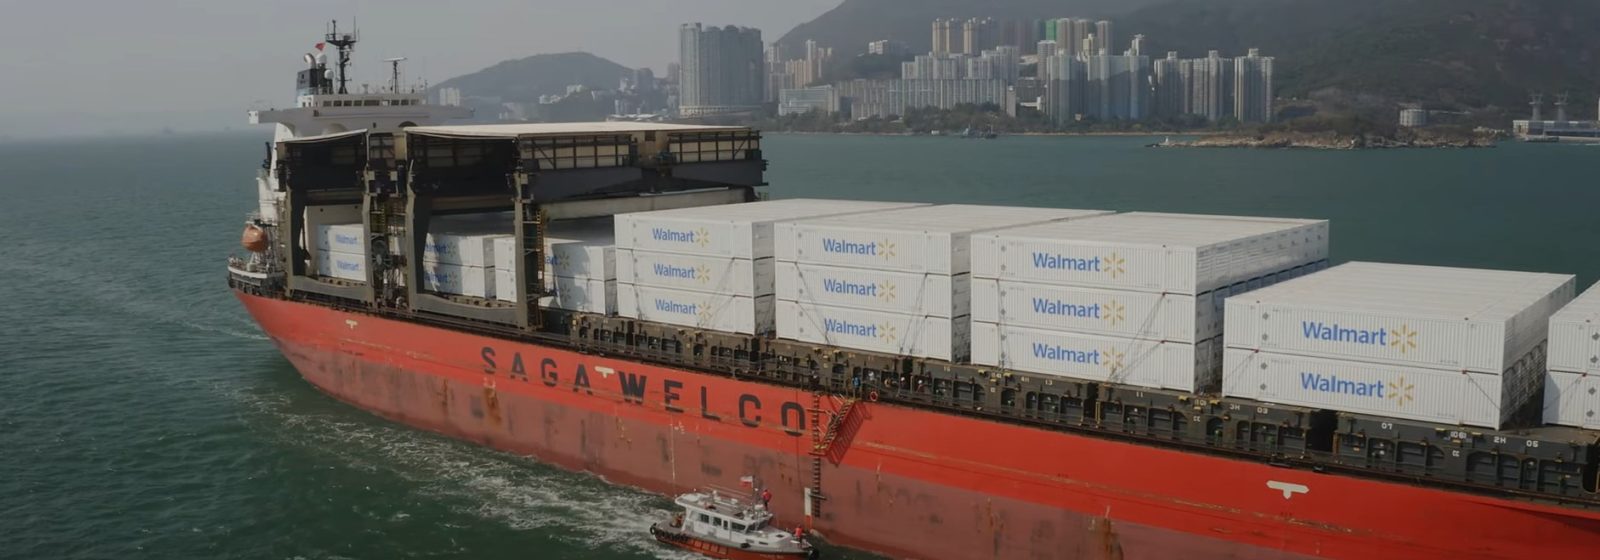 Het bulkschip 'Saga Tide' verlaat Shekou met containers van Walmart